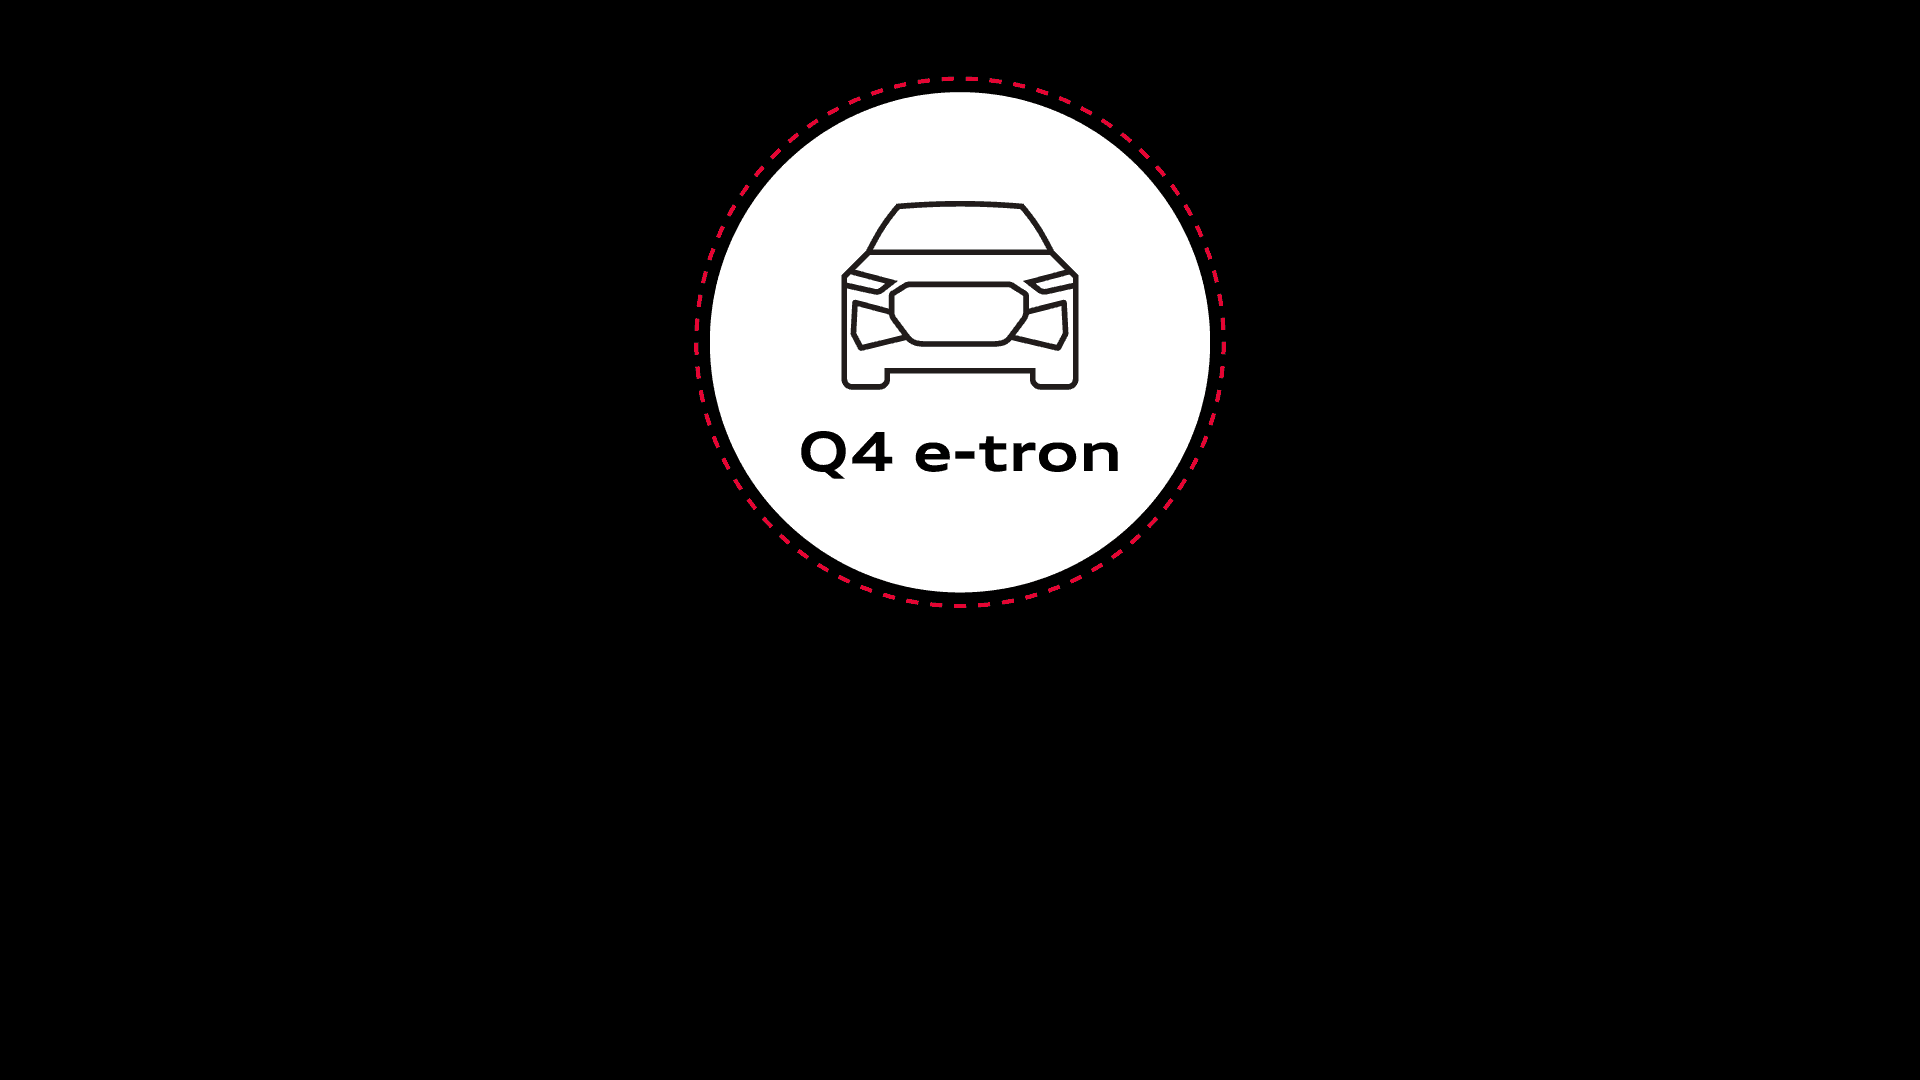 Nachhaltigkeit eines Elektroautos – der Lebenszyklus des Audi Q4 e-tron